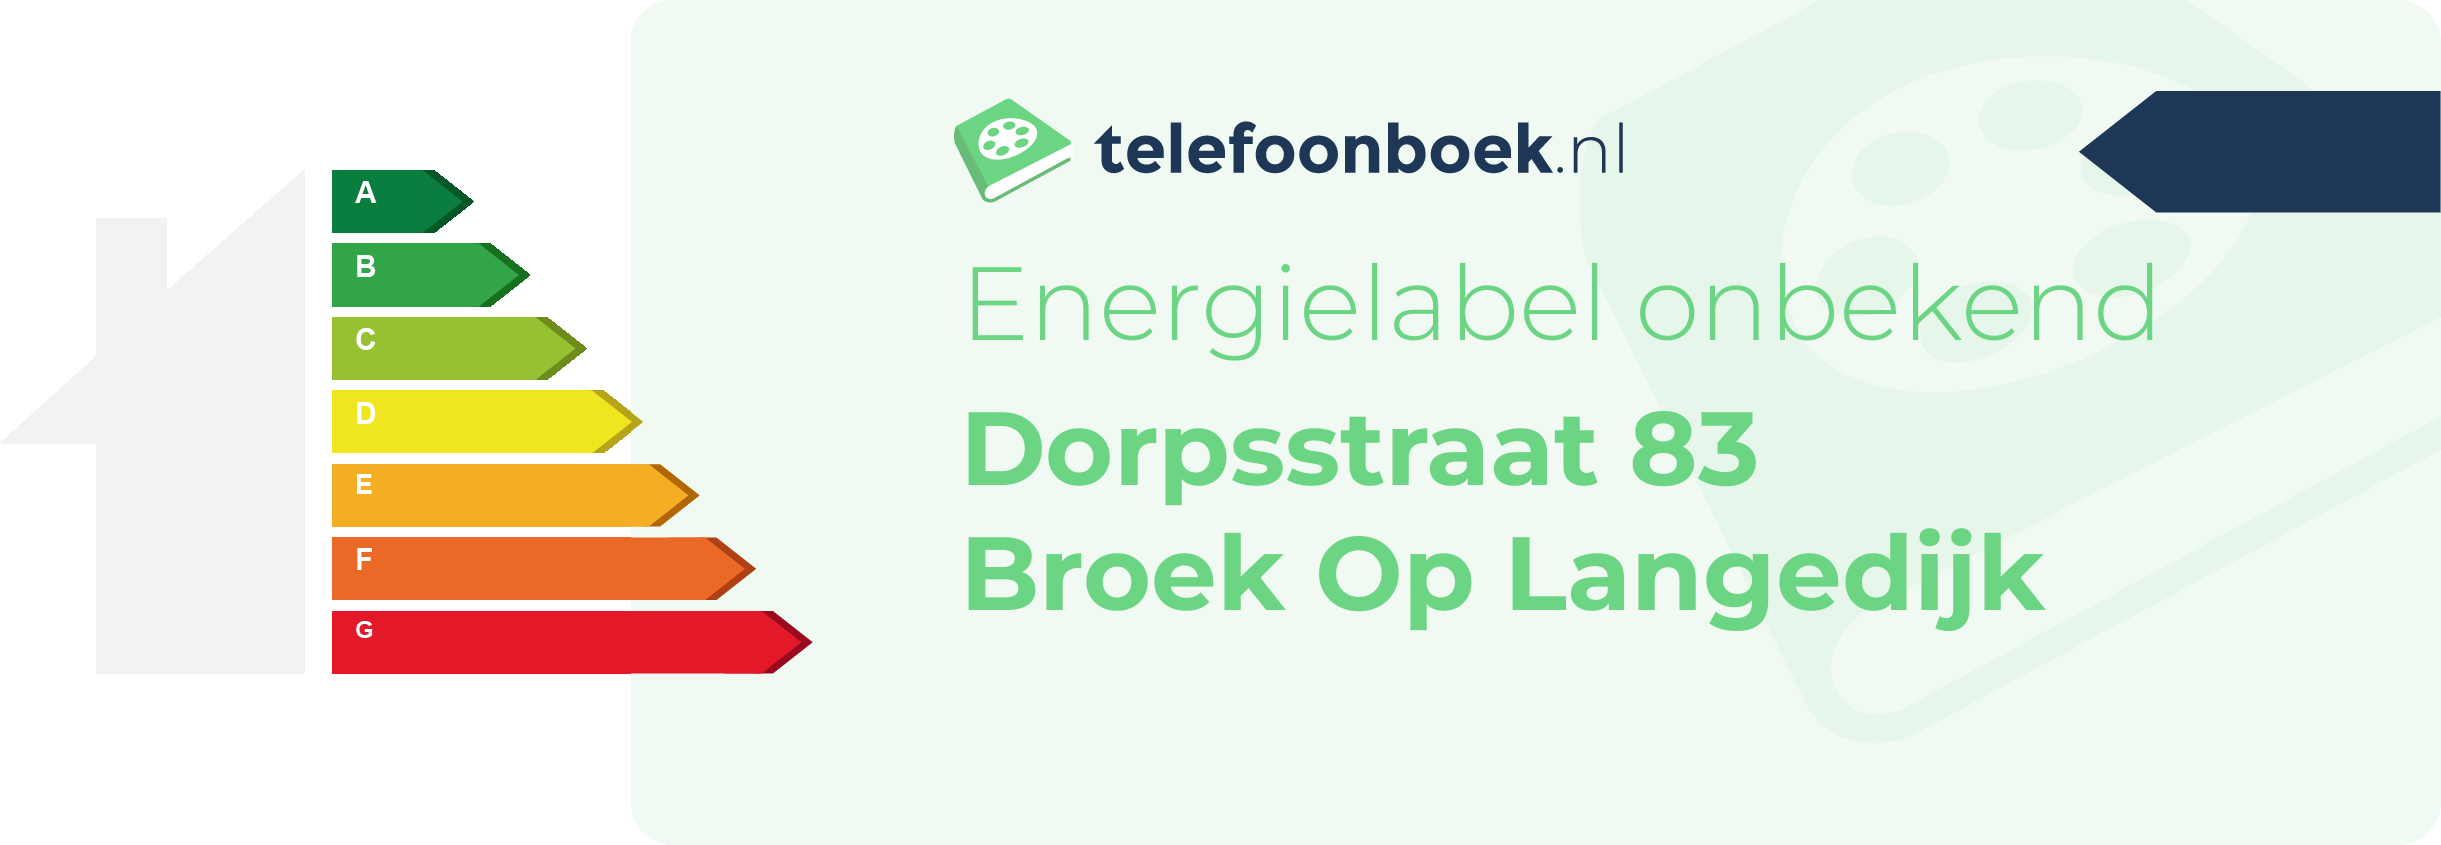 Energielabel Dorpsstraat 83 Broek Op Langedijk